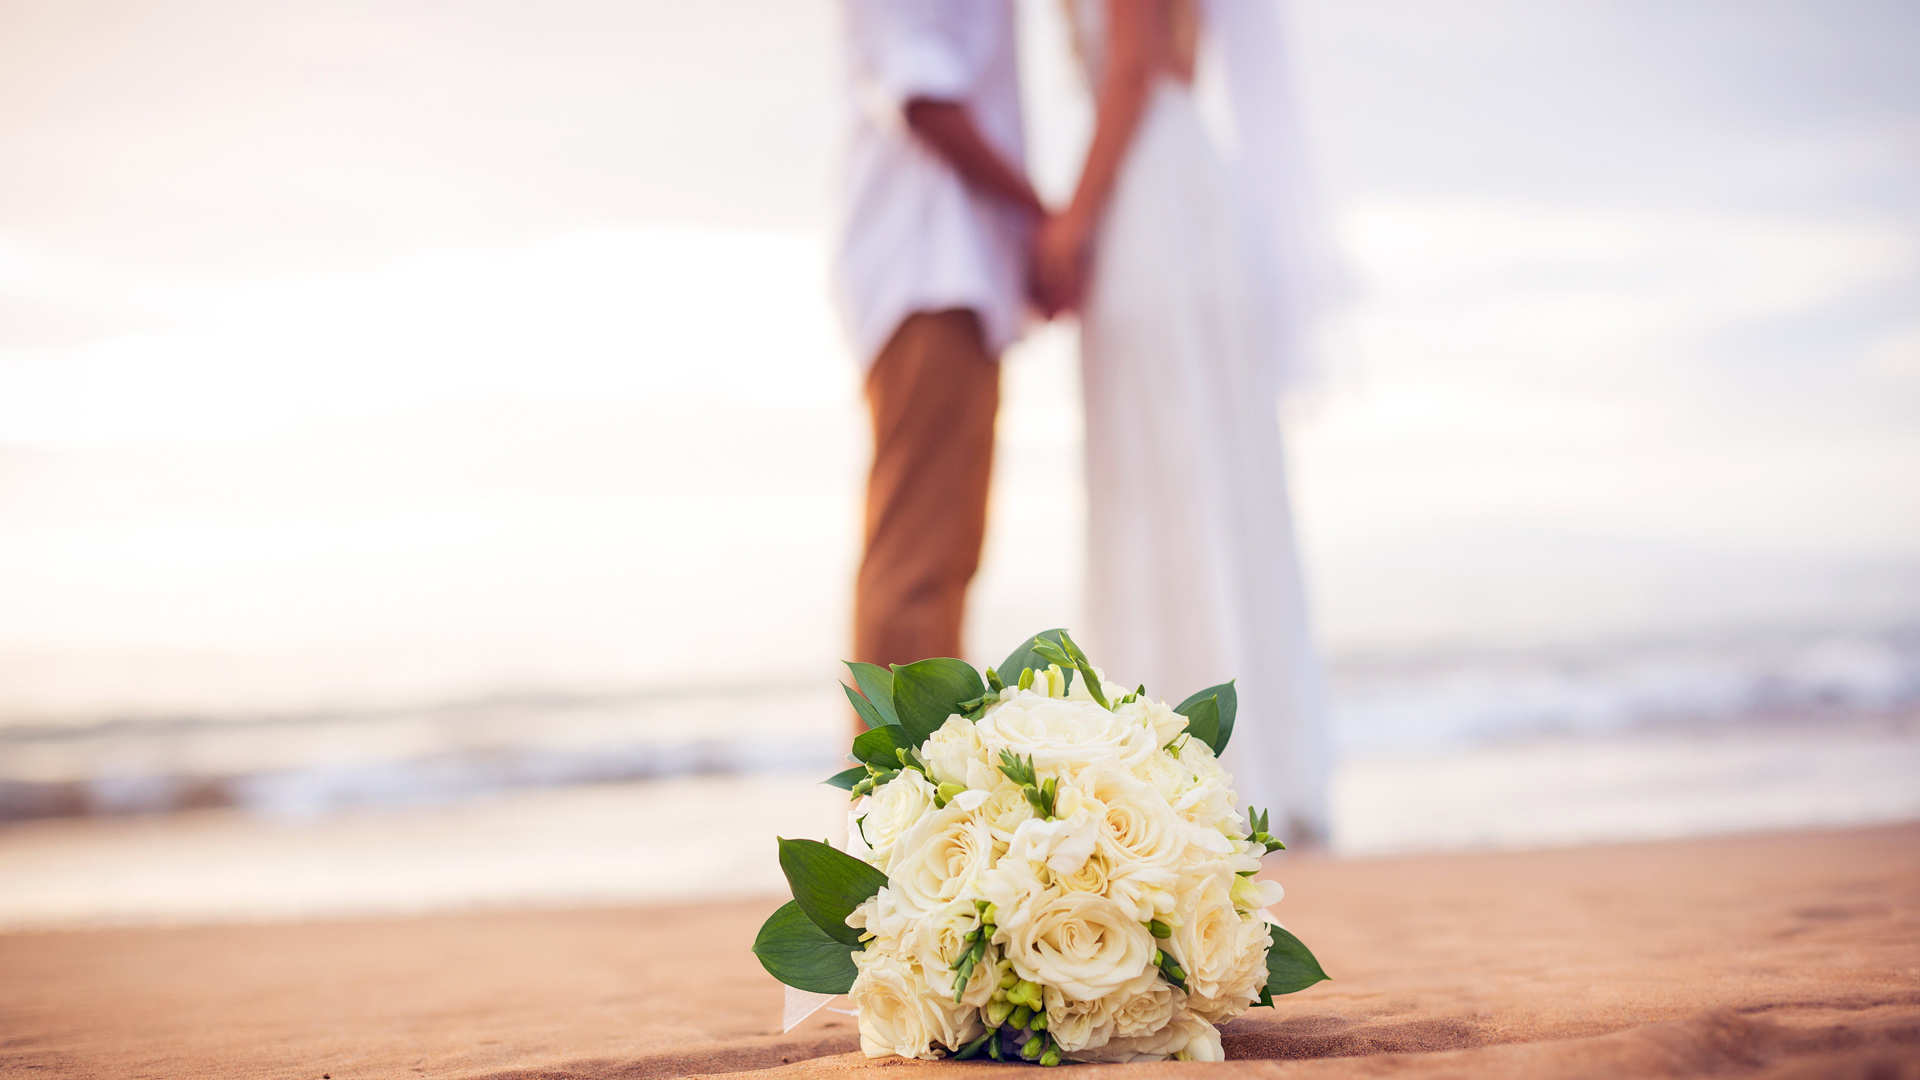 婚礼，婚纱照，新娘，新郎，花束，鲜花，沙滩，大海，浪漫的婚纱照桌面高清壁纸